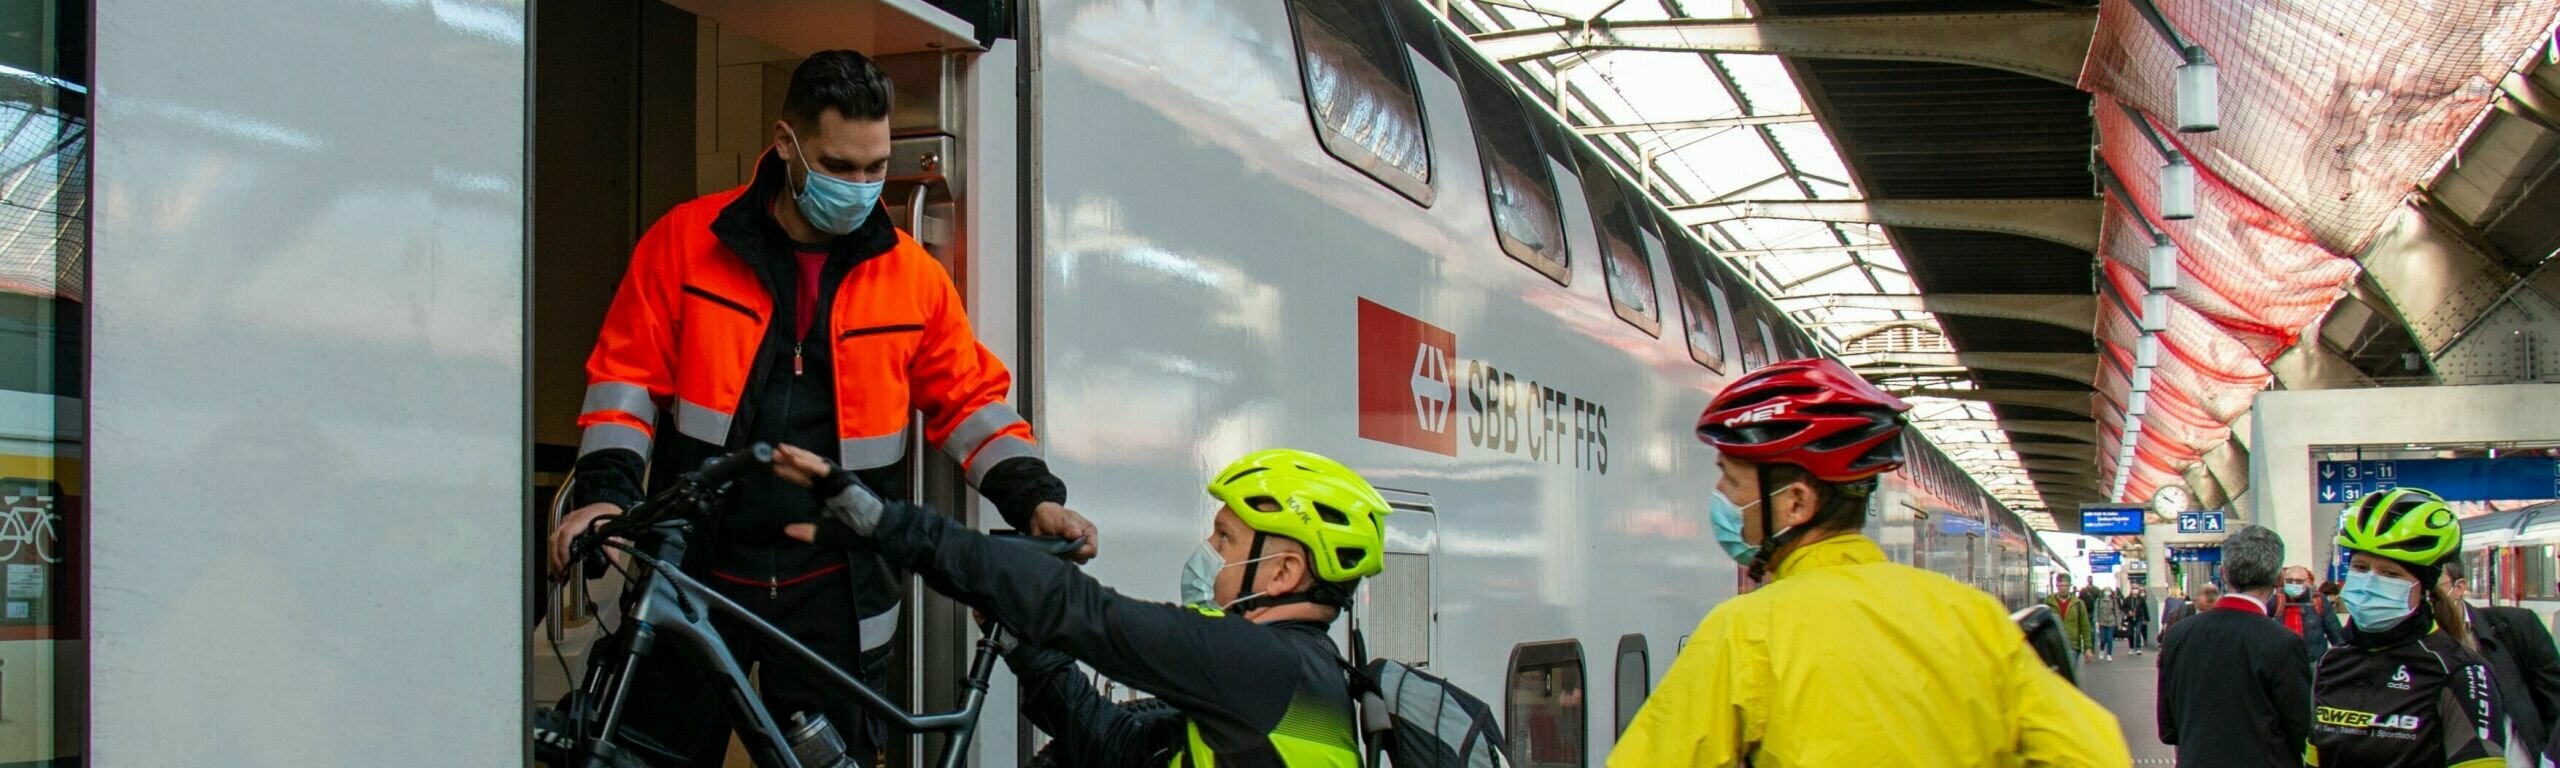 Plus de place pour les vélos dans les trains grandes lignes.